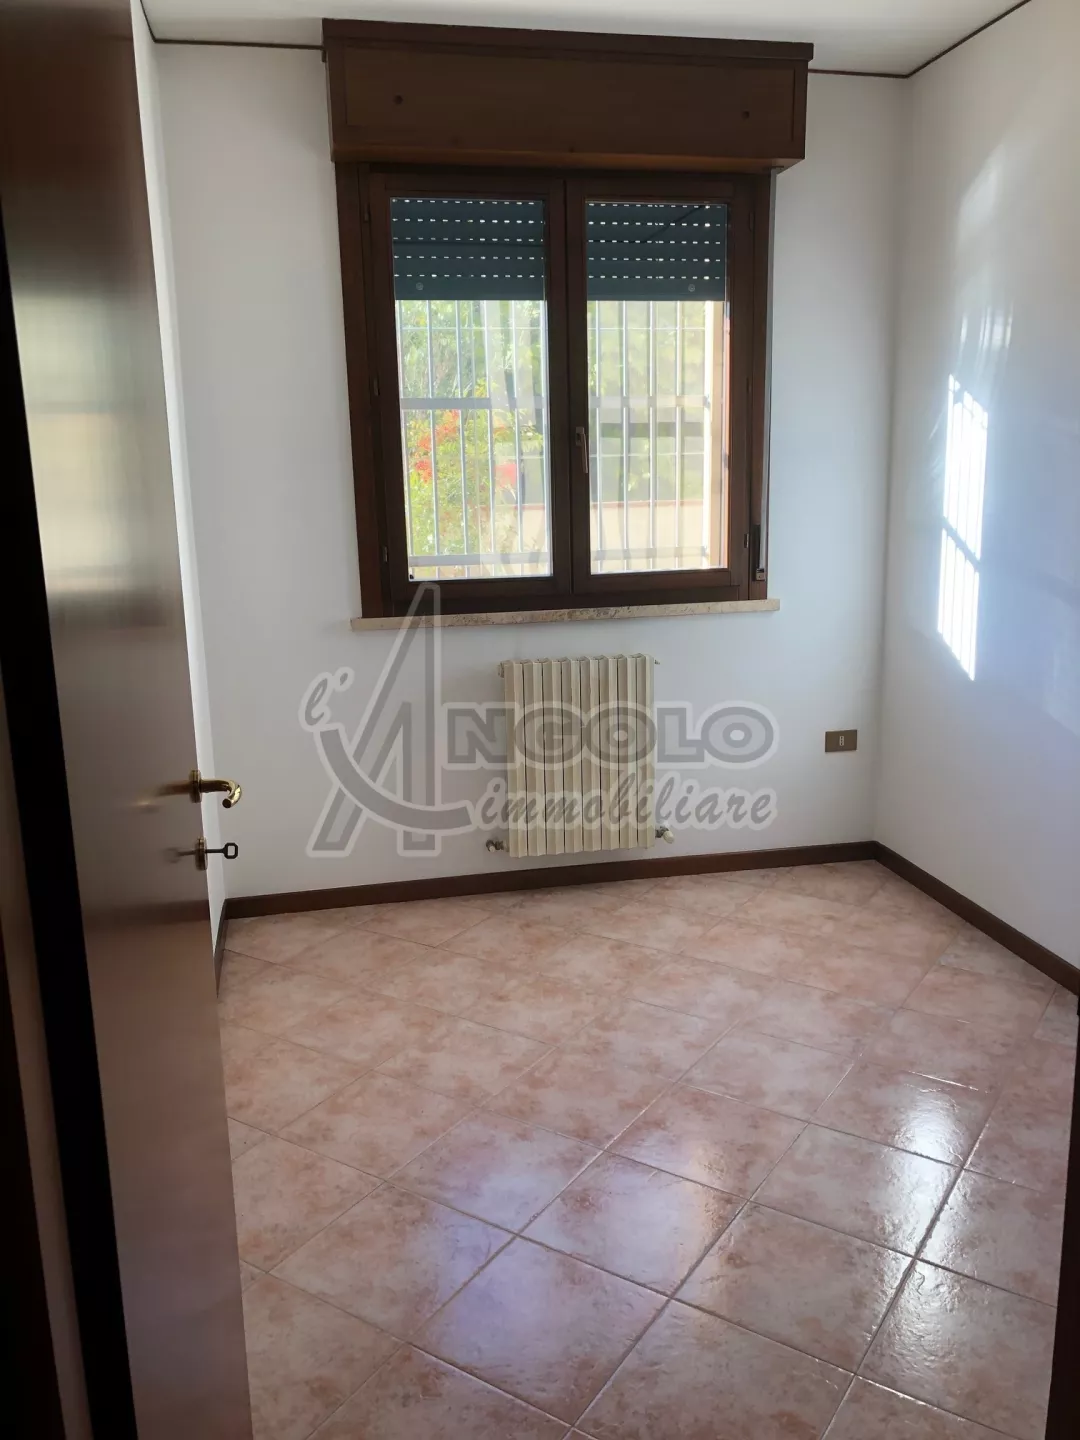 Immagine per Appartamento in affitto a Stienta viale Antonio Ligabue 2